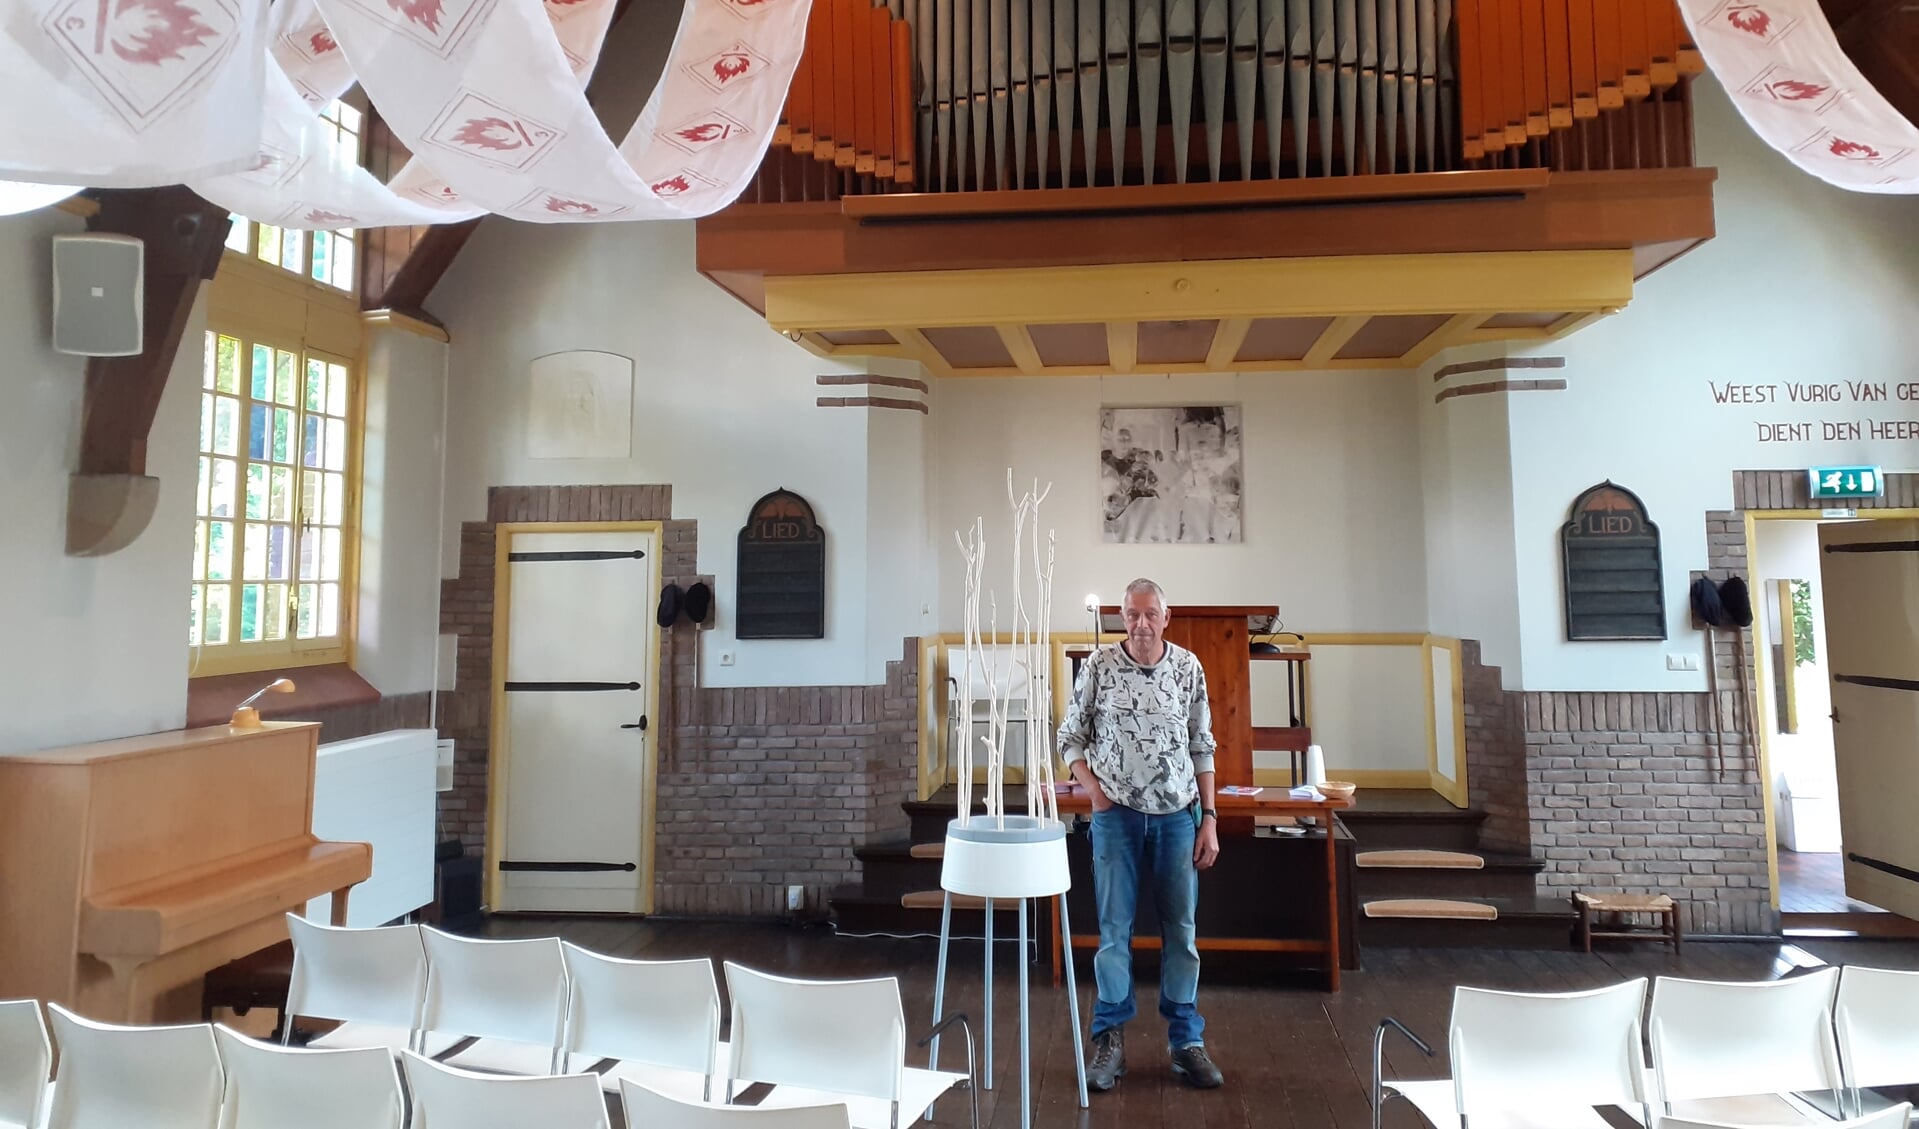 Roel Berg met zijn werk dat hoog in de kerk prijkt: ,,Kerk en kunst versterken elkaar